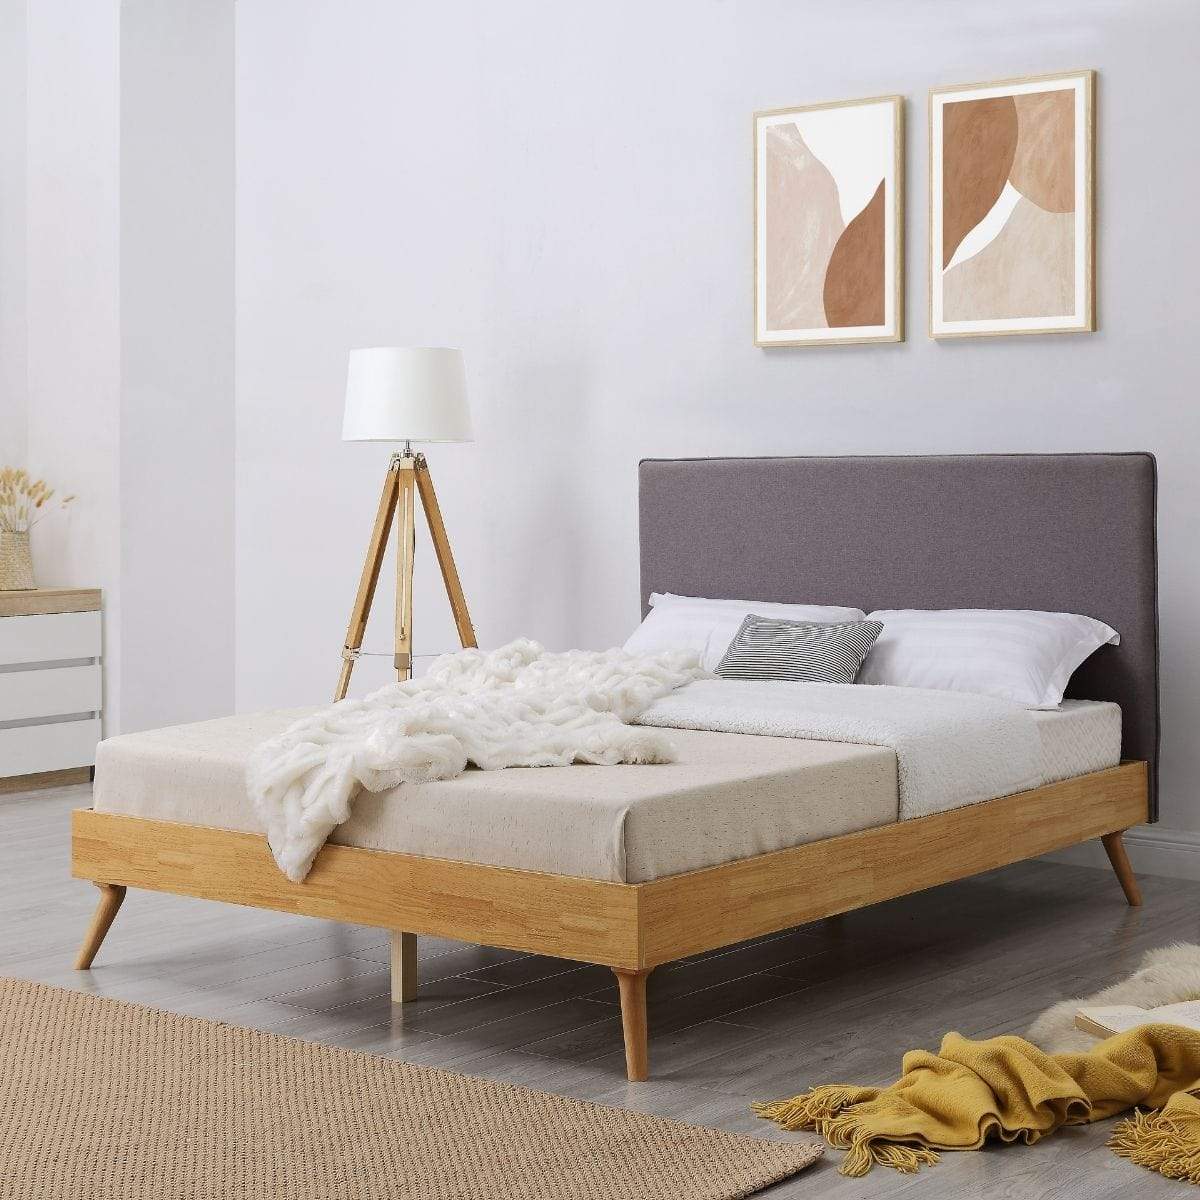 Natural Oak Ensemble Bed Frame Wooden Slat Fabric Headboard Queen - Newstart Furniture